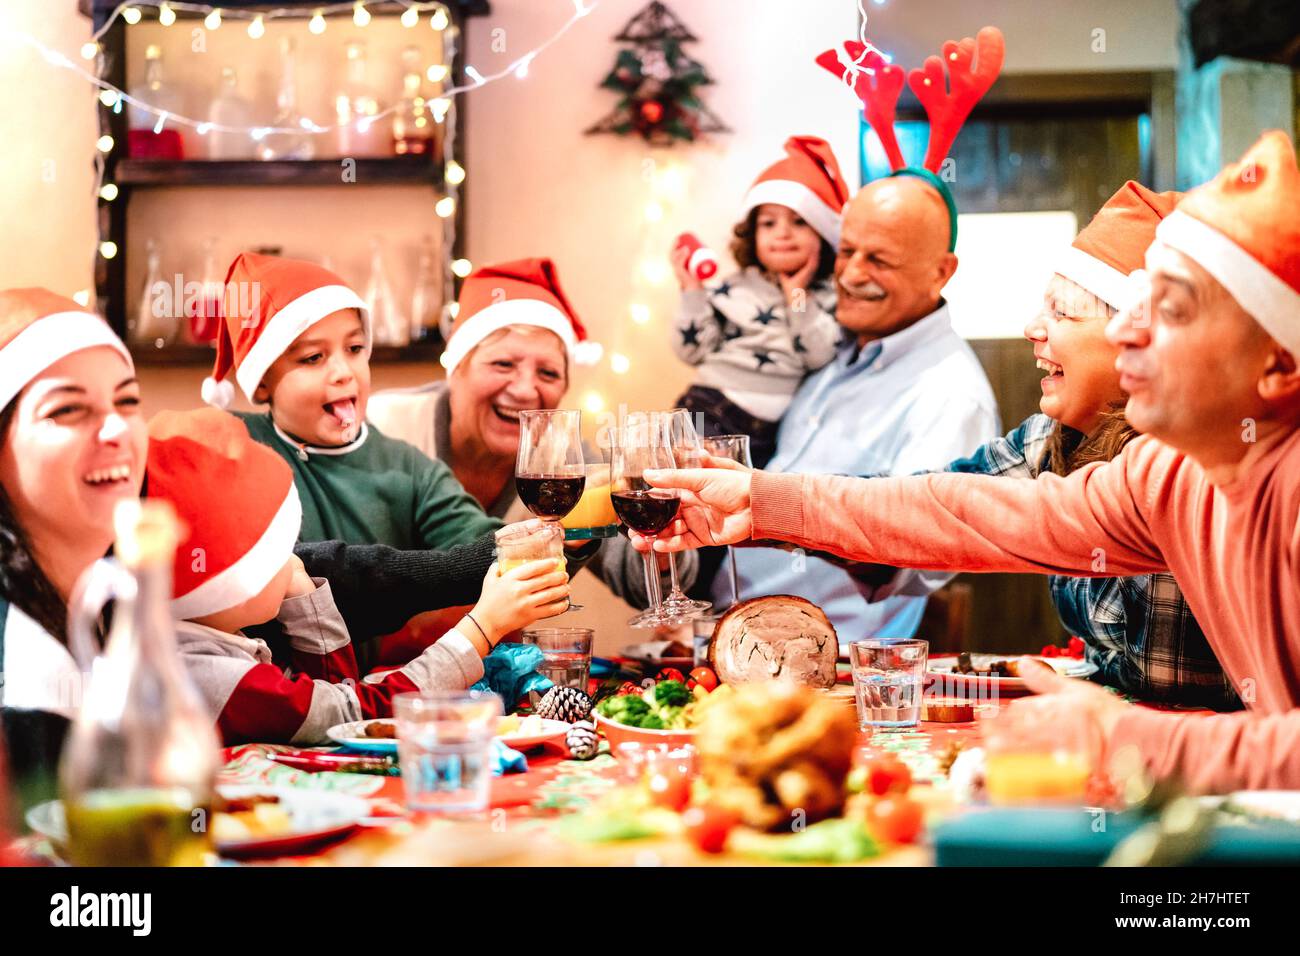 Große Multi-Generation-Familie Toasting beim weihnachtsessen Fest - Winterurlaub Weihnachten Konzept mit Eltern und Kindern zusammen zu Hause Abendessen essen Stockfoto